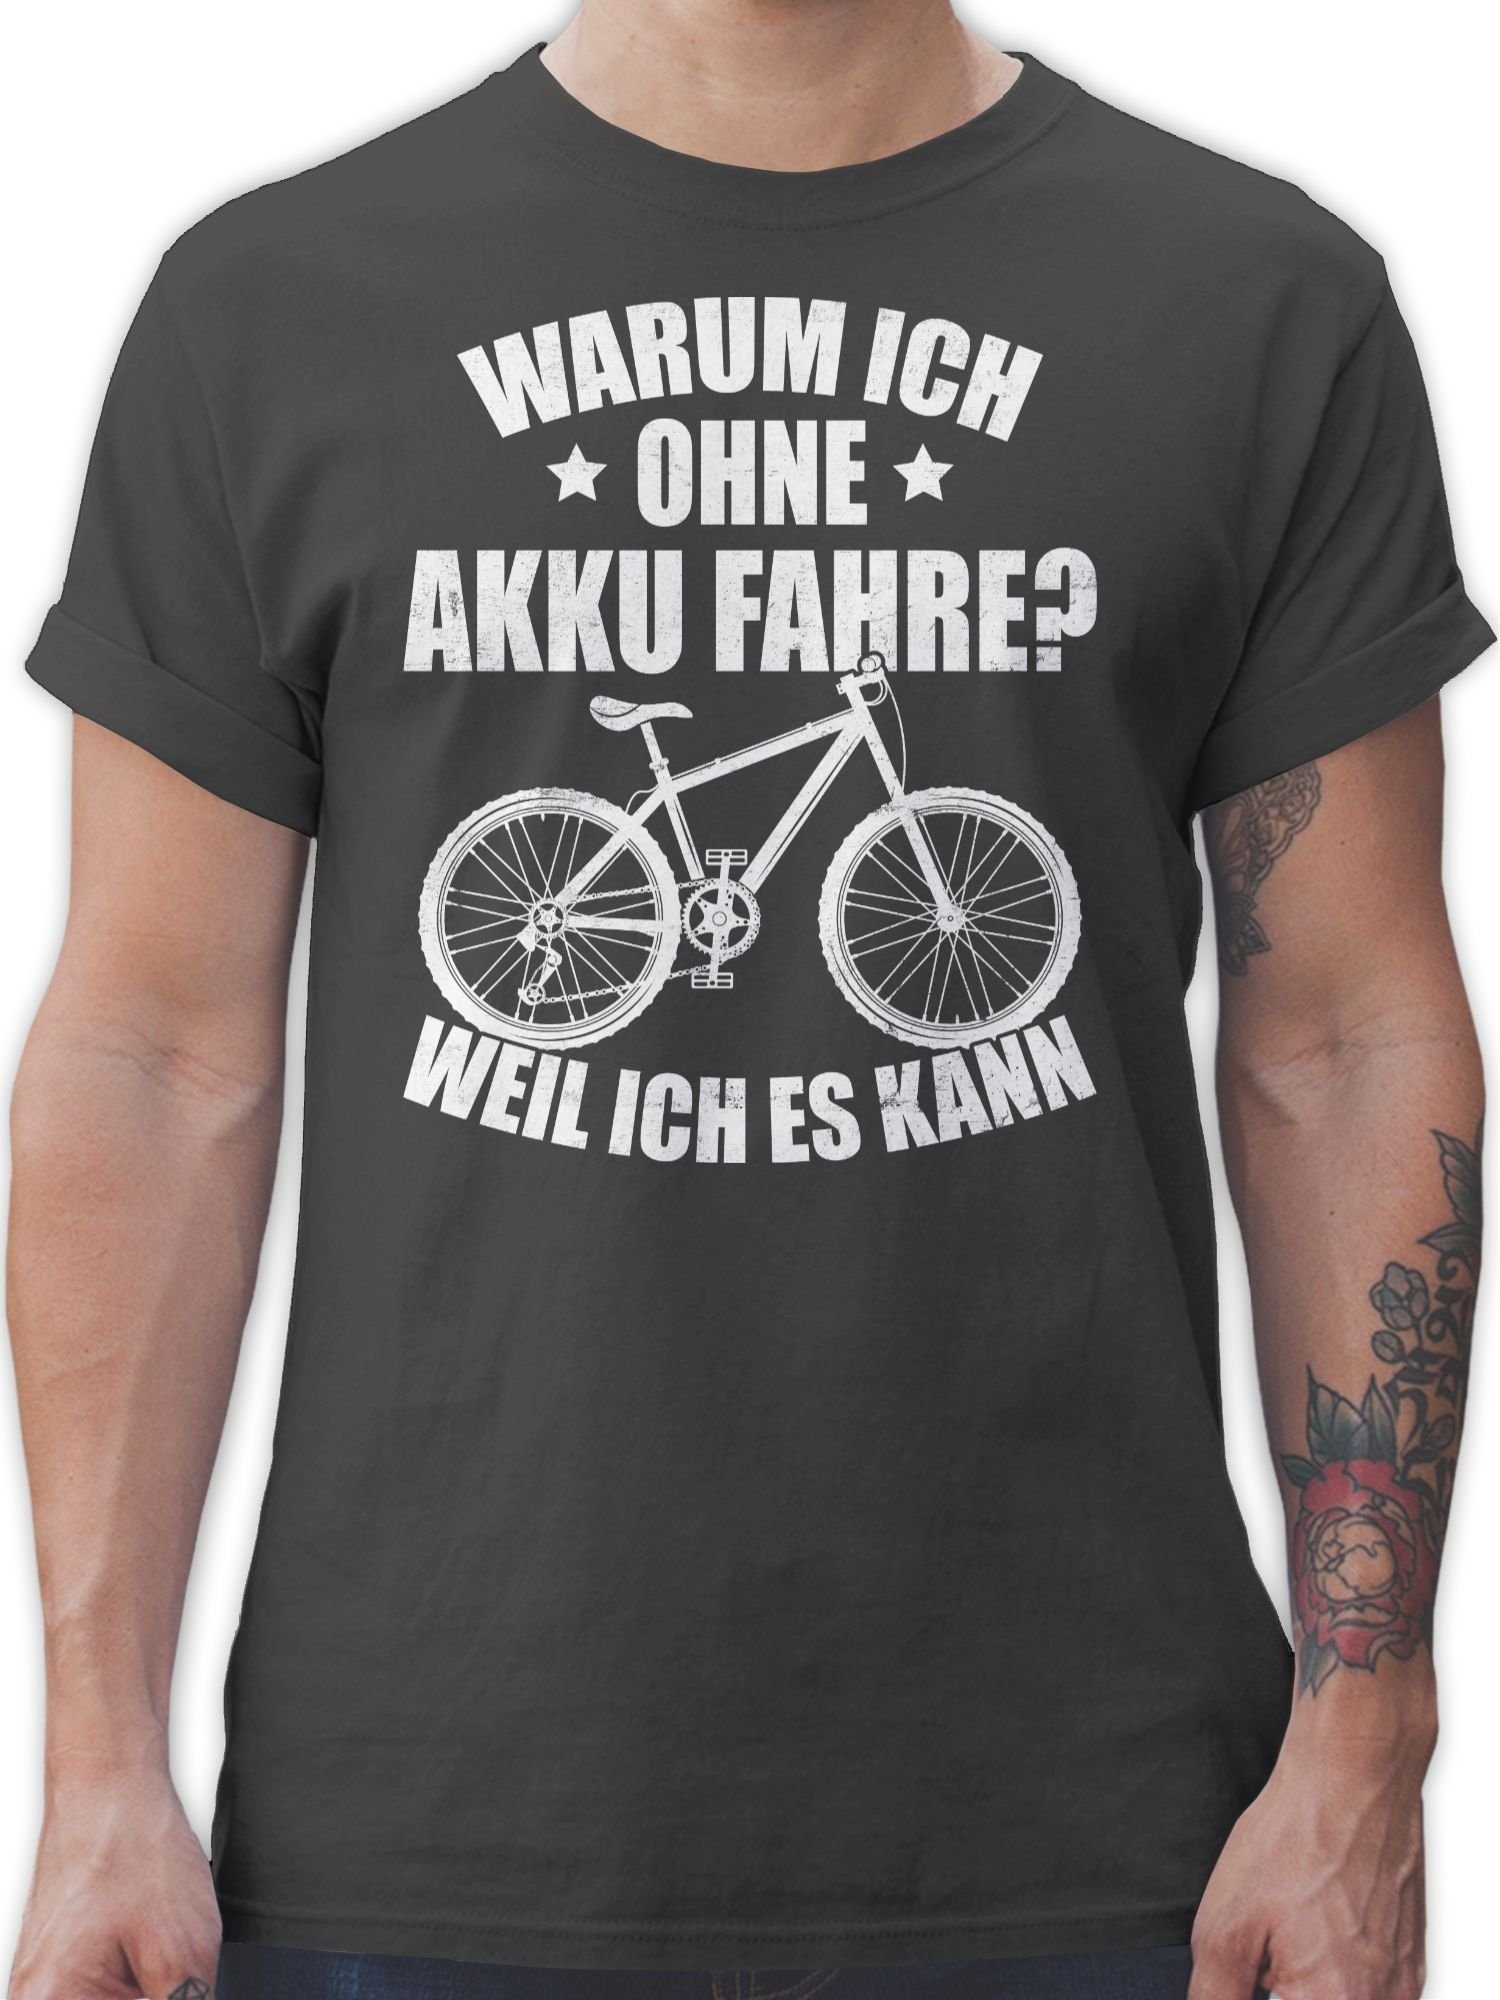 Shirtracer T-Shirt Warum ich ohne kann es fahre Radsport Akku - - weil Fahrrad 03 Dunkelgrau Bekleidung ich weiß